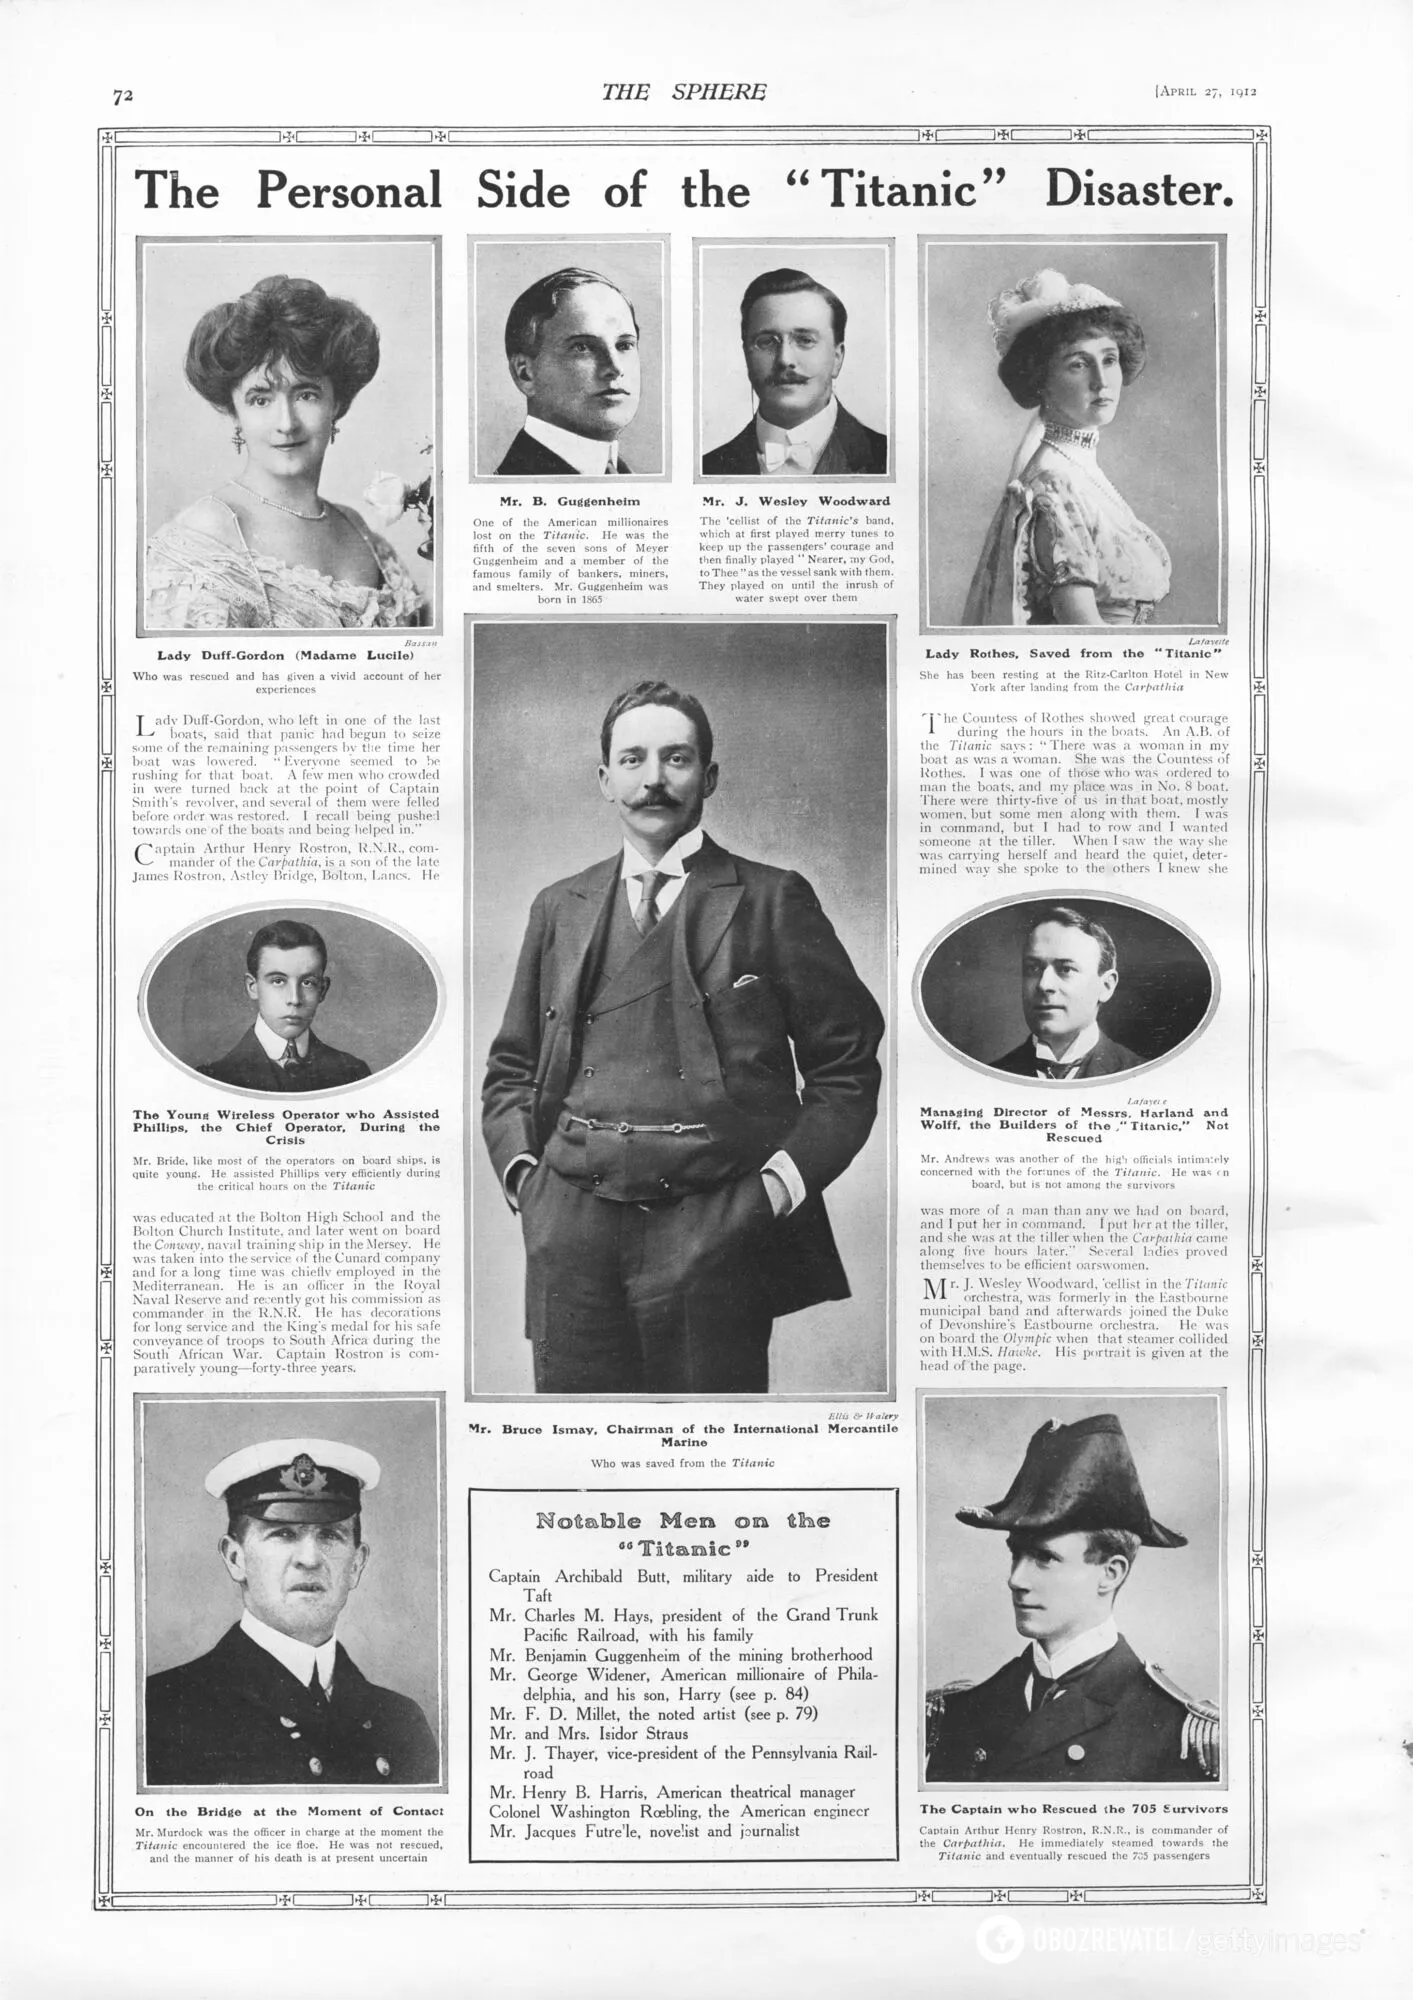 Фотографии и информация об известных людях, связанных с "Титаником", третий – виолончелист Джон Уизли Вудворт